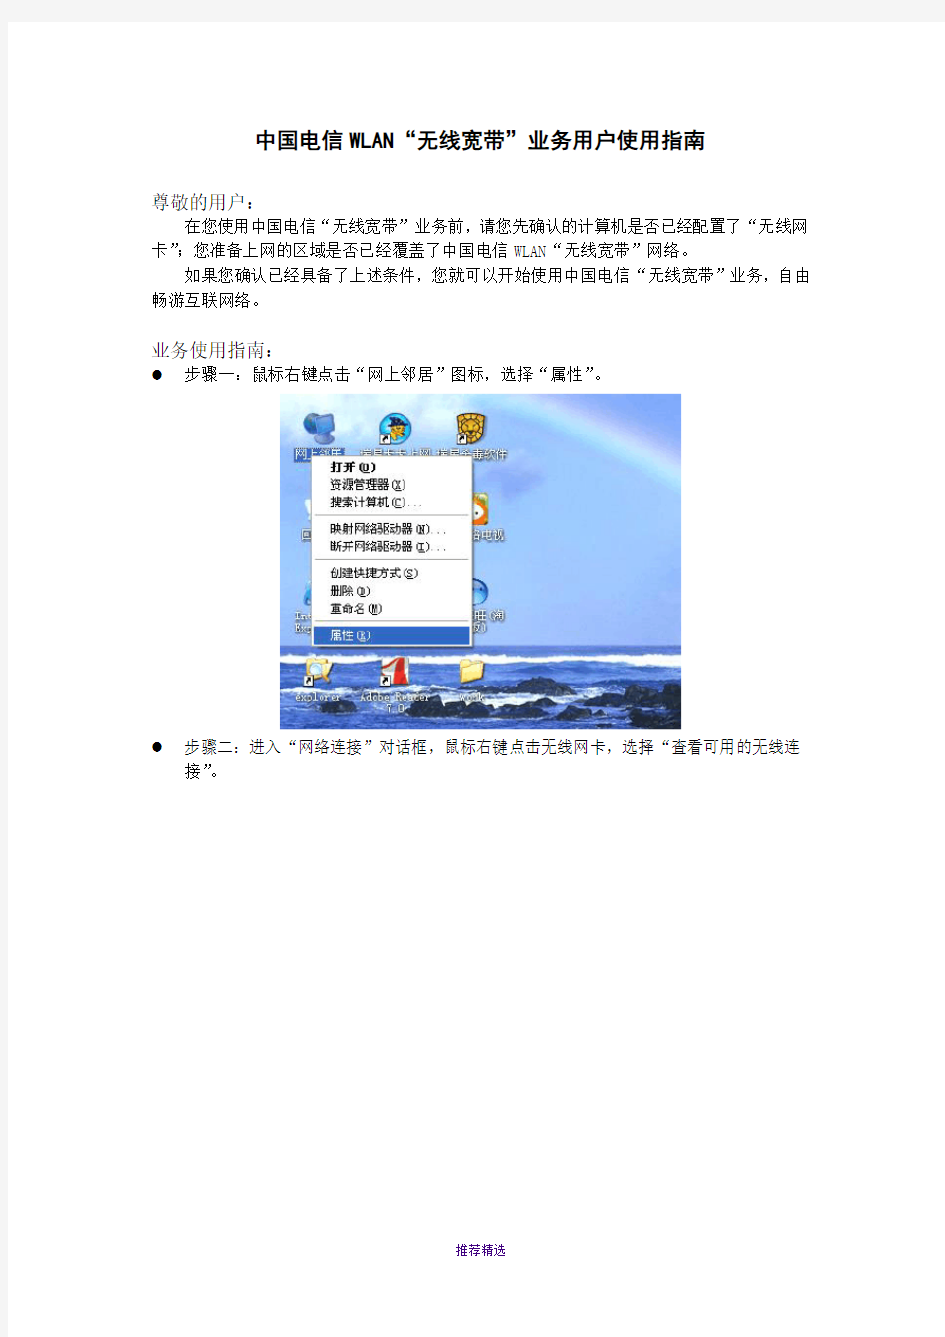 中国电信WLAN“无线宽带”业务用户使用指南